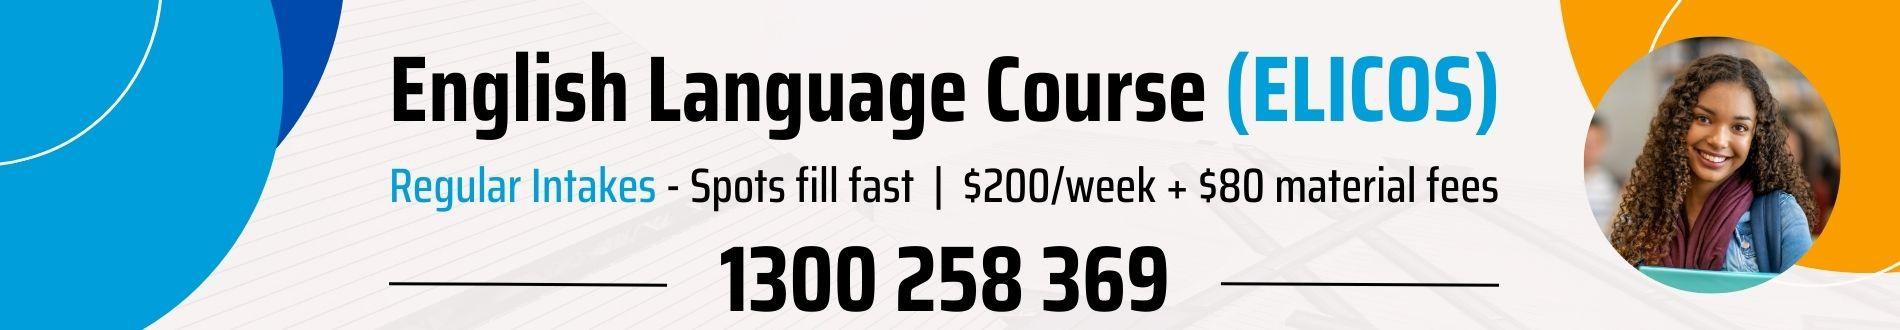 English Language Course ELICOS International Students Australia